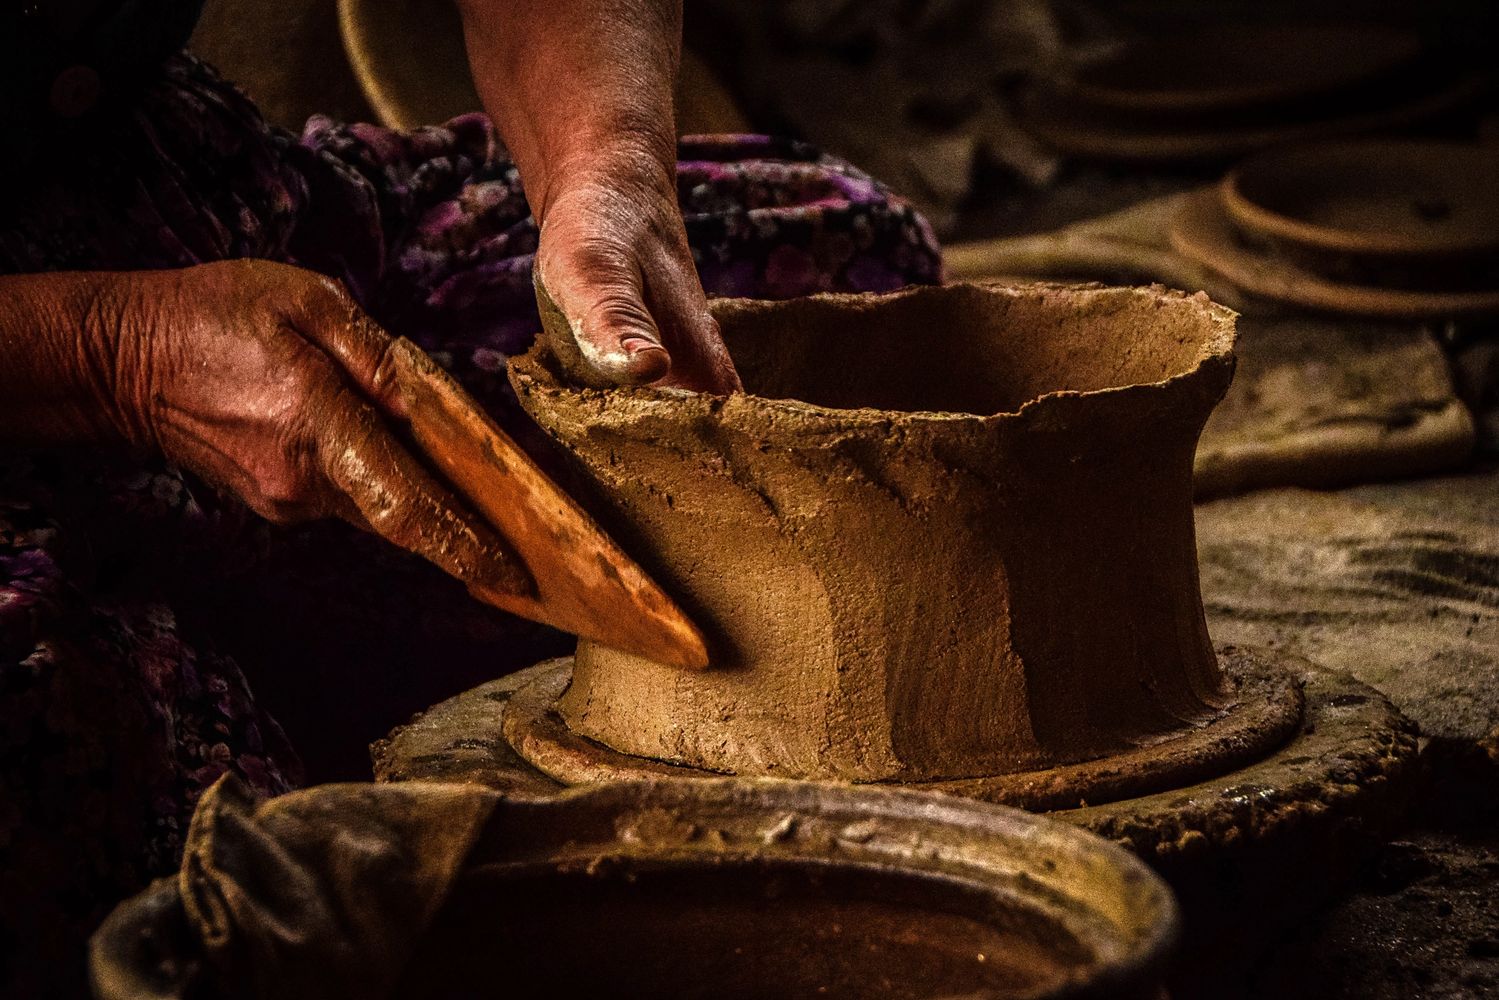 Handmade pottery Photo by Korhan Erdol from Pexels